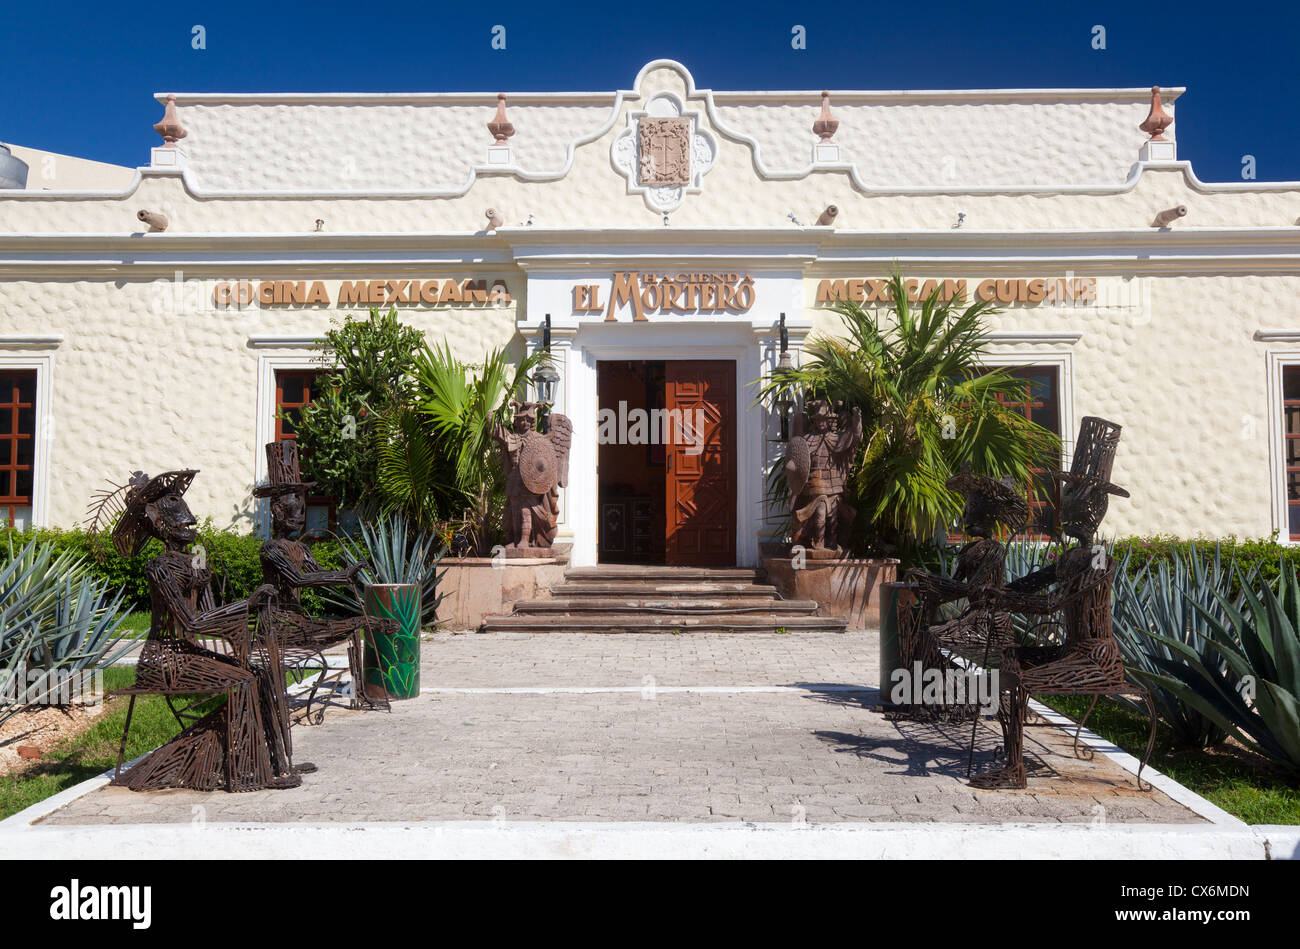 Hacienda El Mortero Mexican Restaurant, Cancun, Mexique Banque D'Images